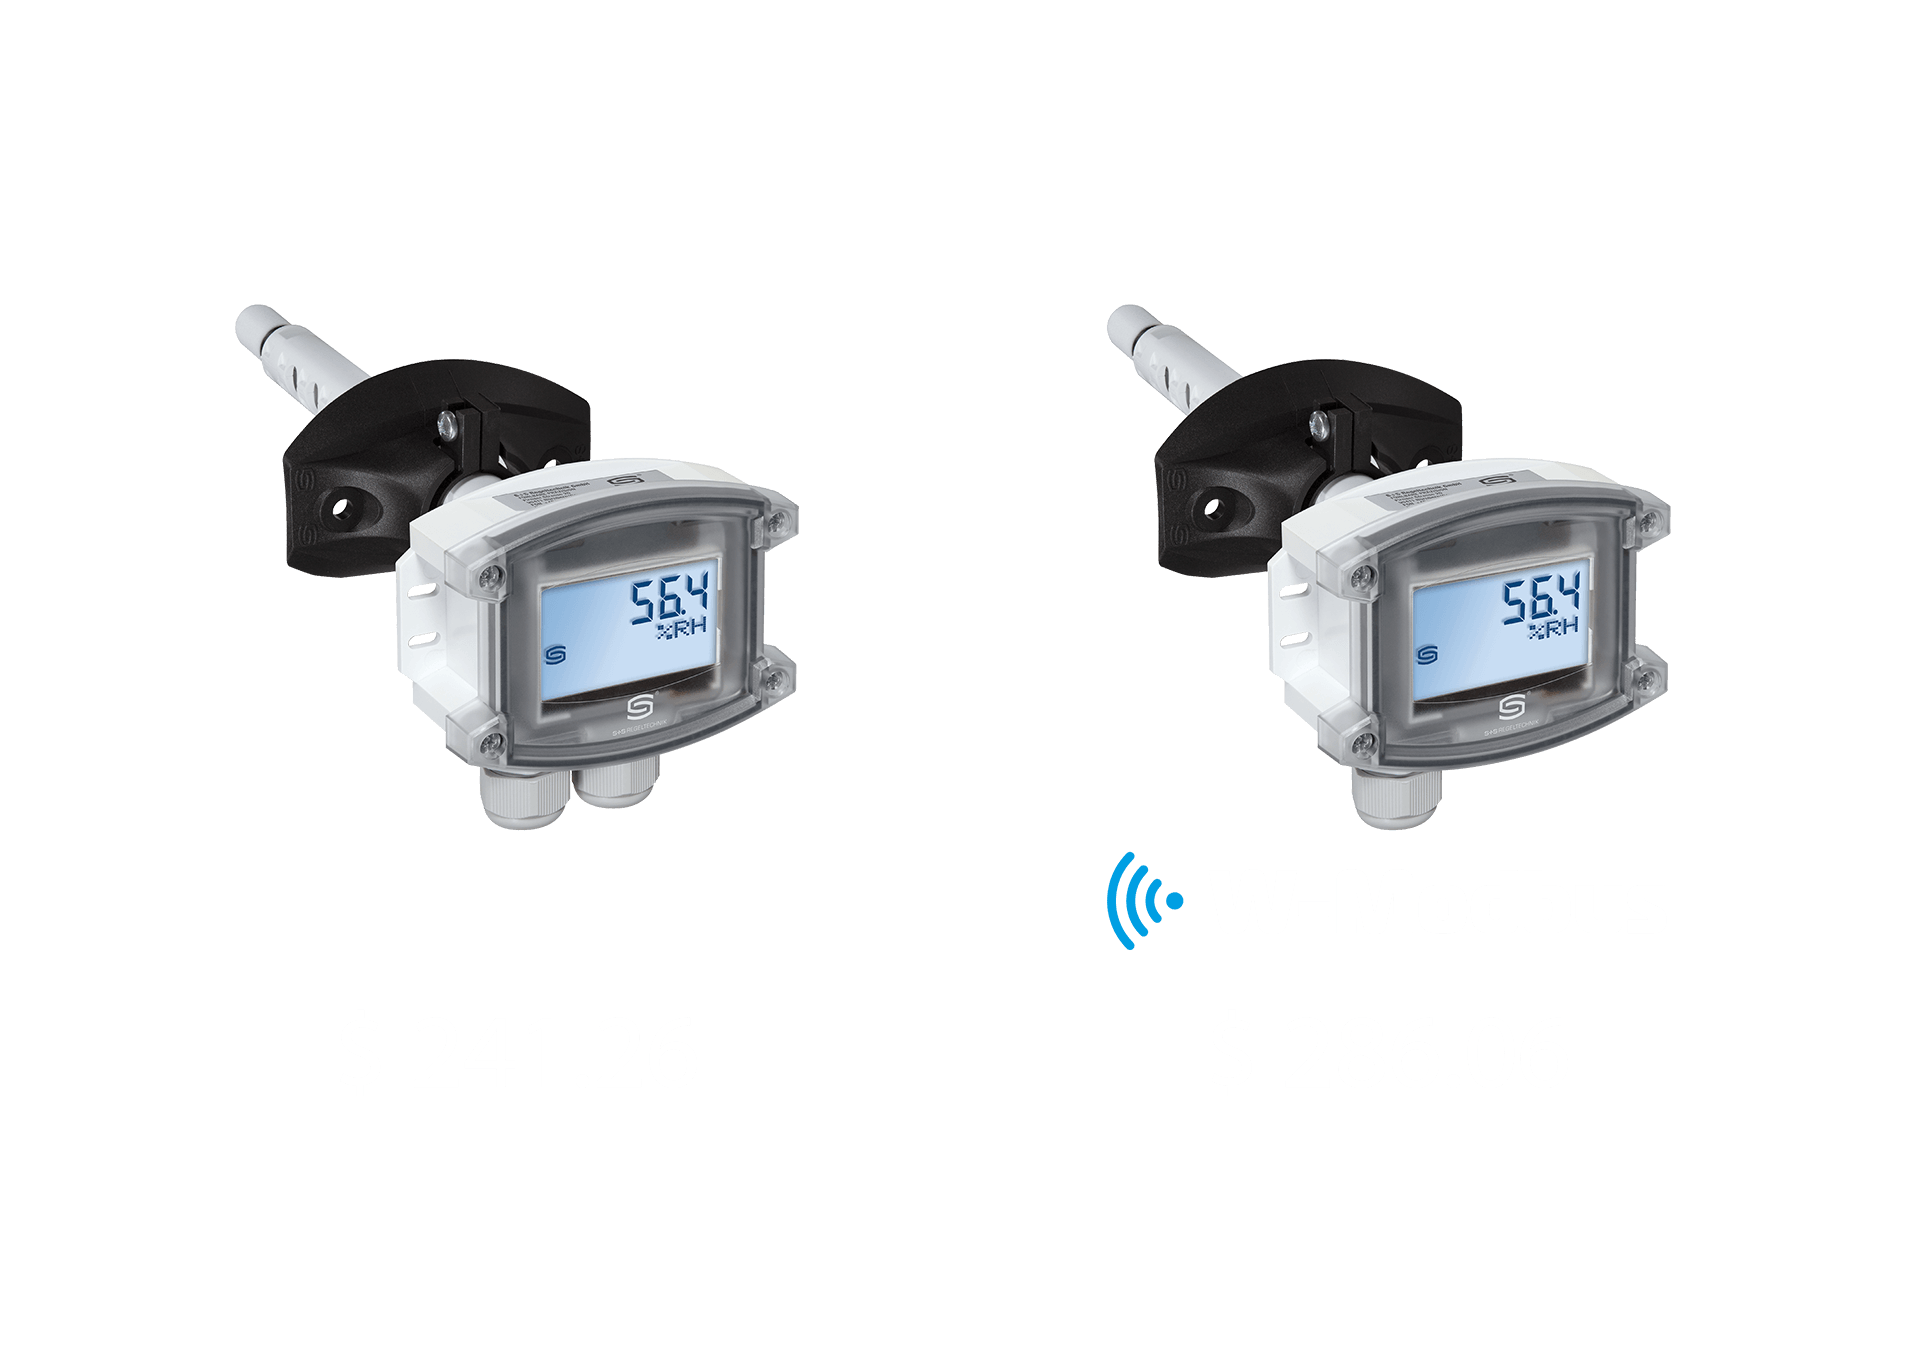 Outdoor temperature sensor with W-Modbus Price comparison